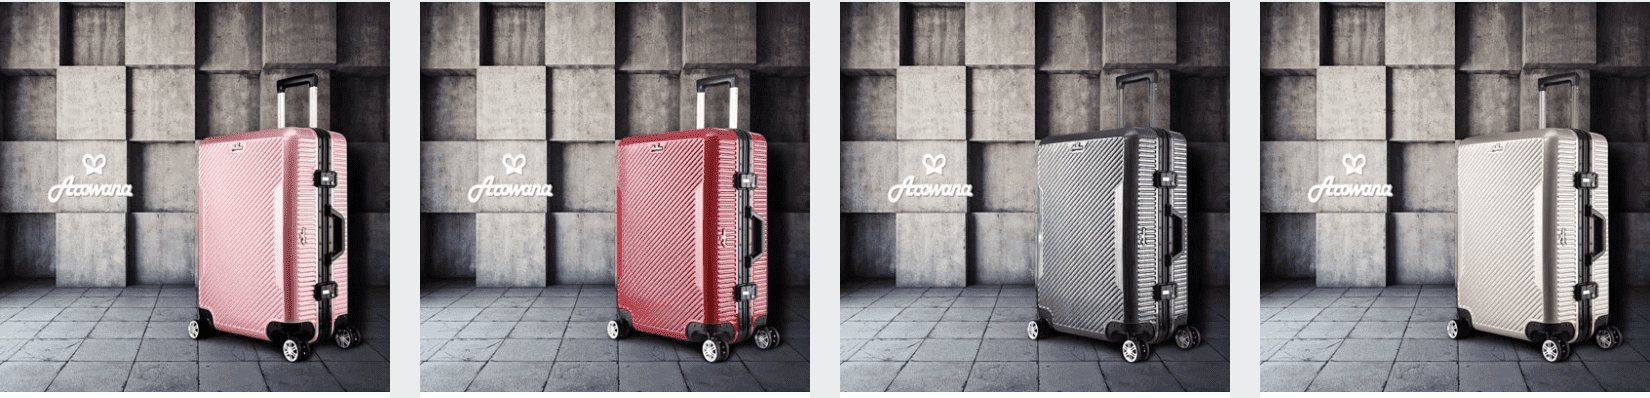 歐洲旅行行李箱裝什麼？行李箱必帶物品以及推薦使用的行李箱大小～航太斜紋鋁框避震輪旅行箱、行李箱